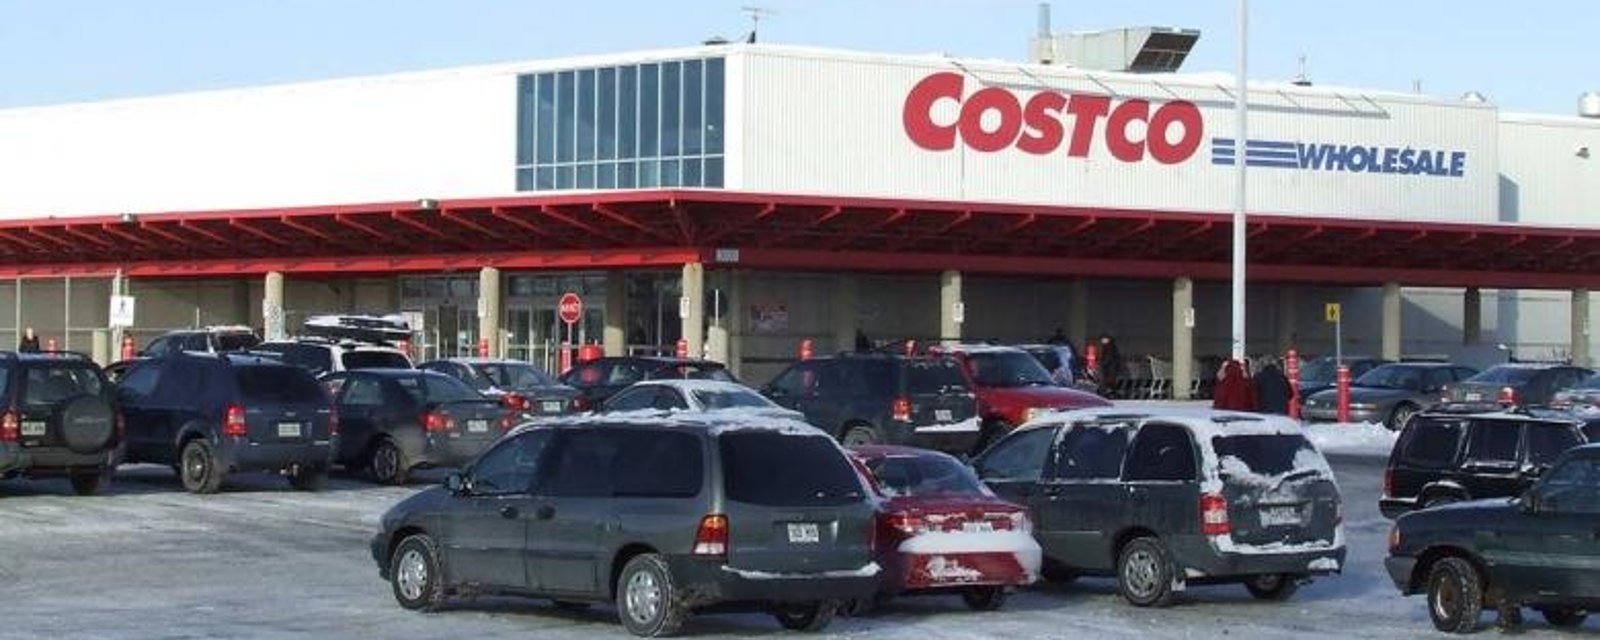 Voici comment faire des achats chez Costco sans être membre et de façon légale!